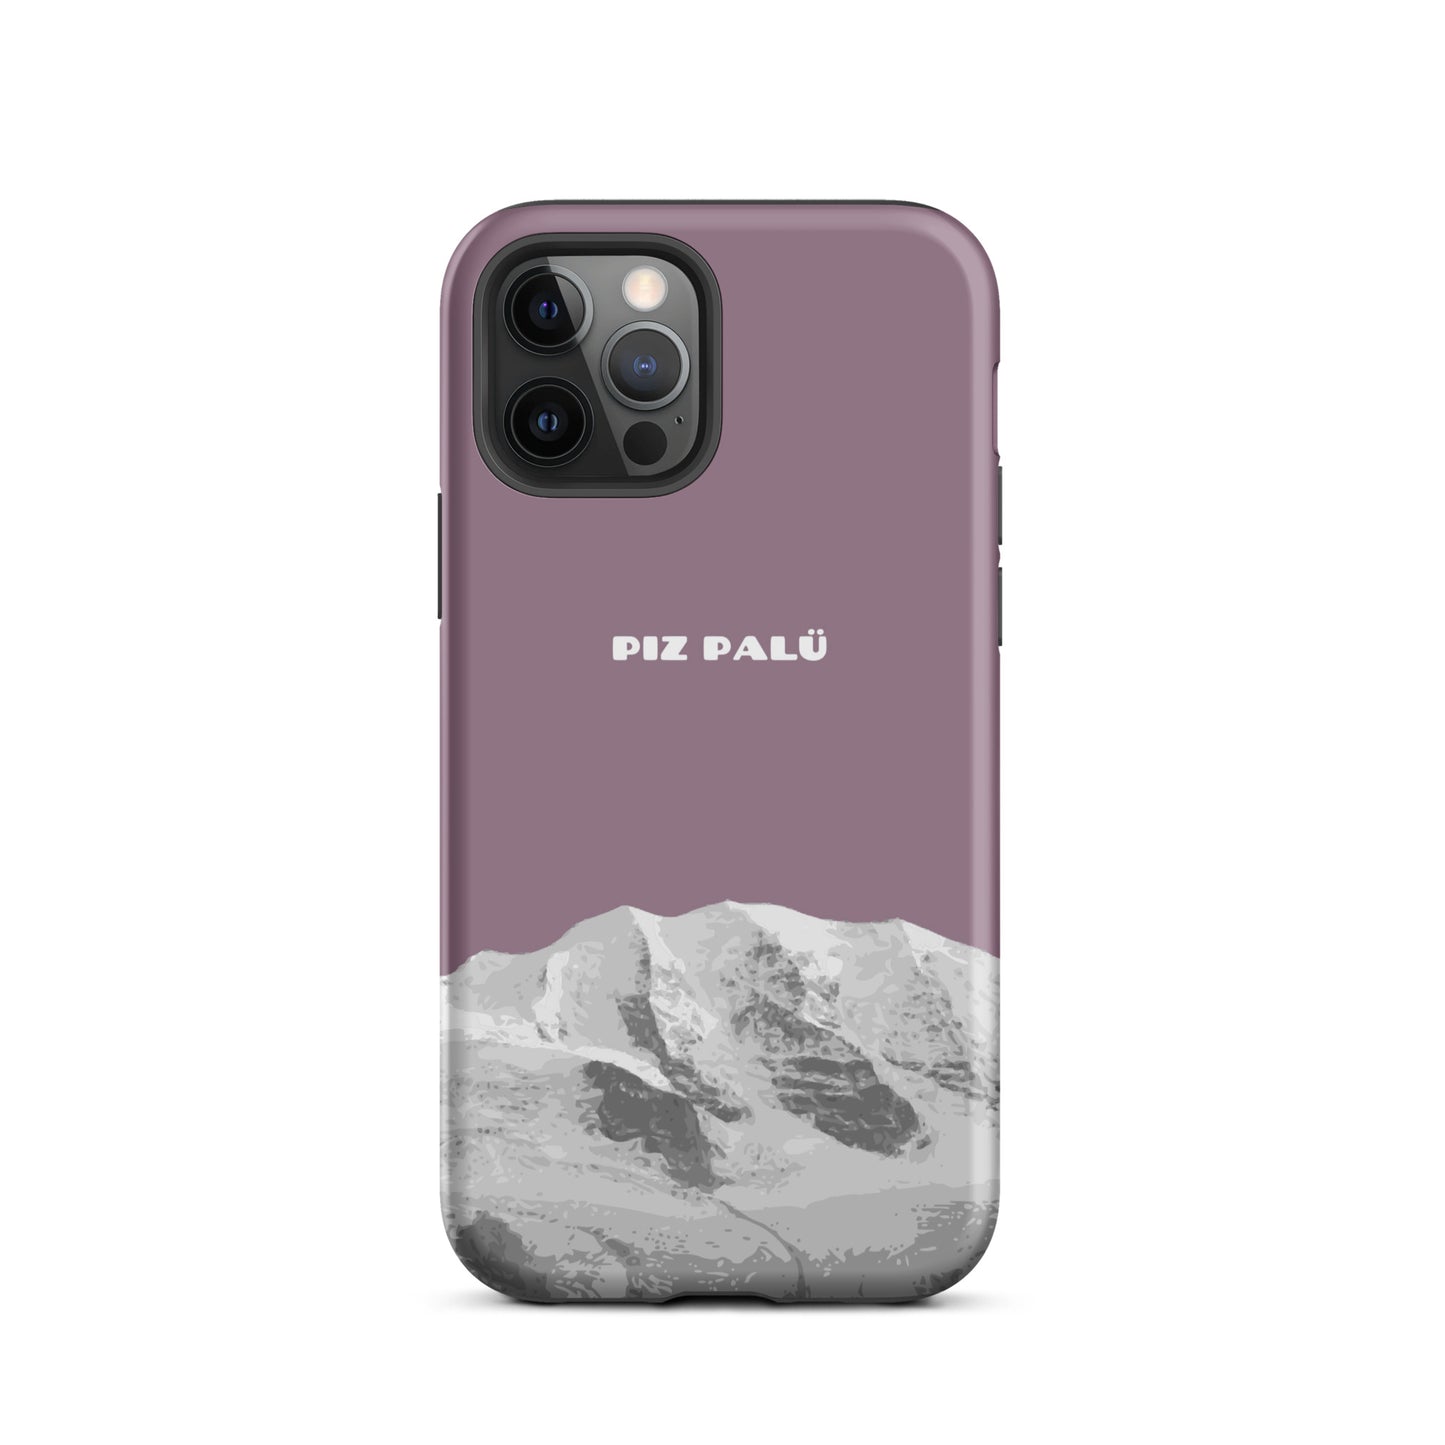 Hülle für das iPhone 12 Pro von Apple in der Farbe Pastellviolett, dass den Piz Palü in Graubünden zeigt.